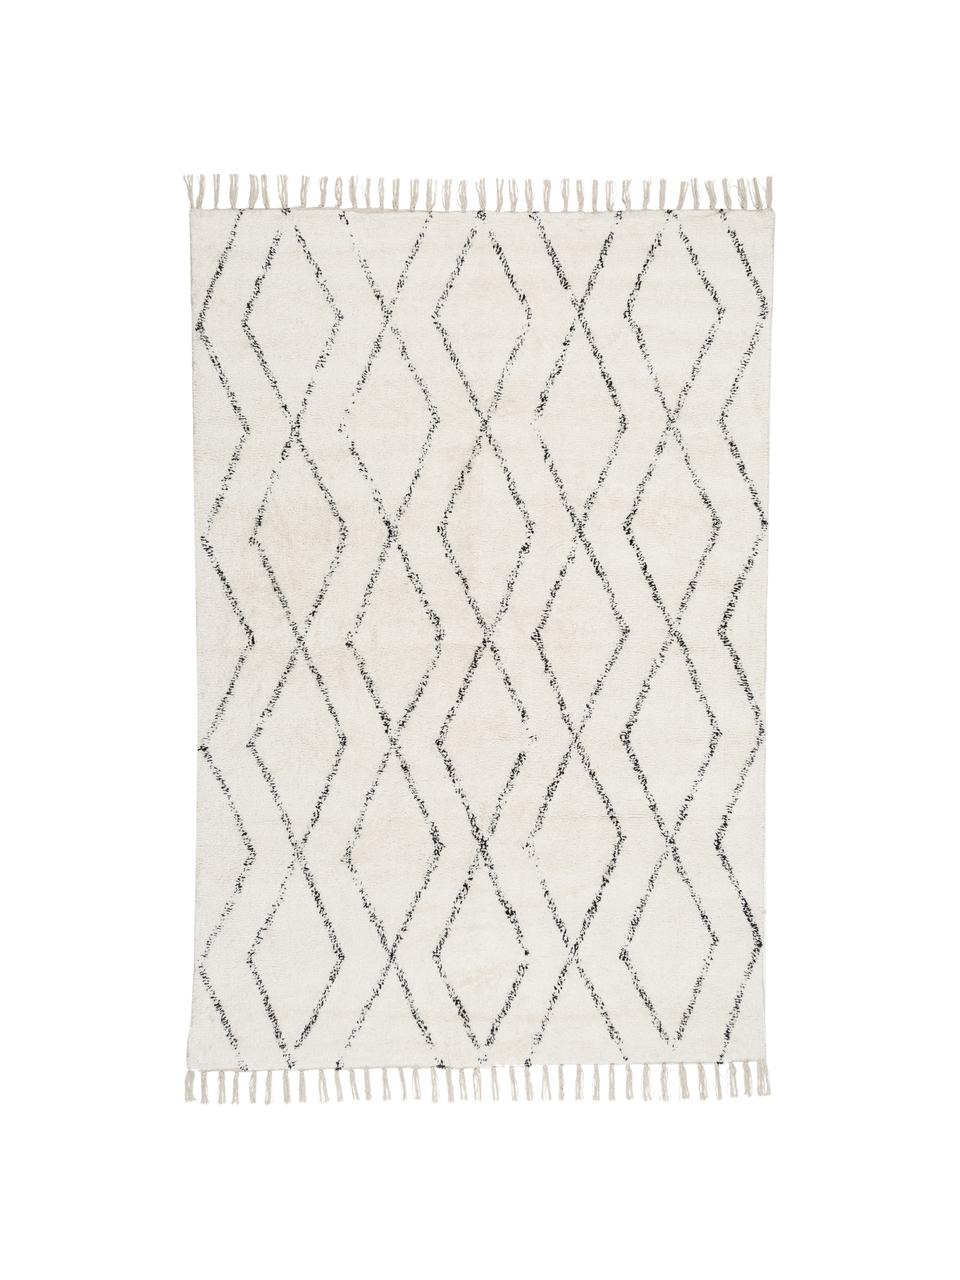 Handgewebter Teppich Berber mit Fransen, 100% Baumwolle, Grau, Cremeweiss, B 140 x L 200 cm (Grösse S)